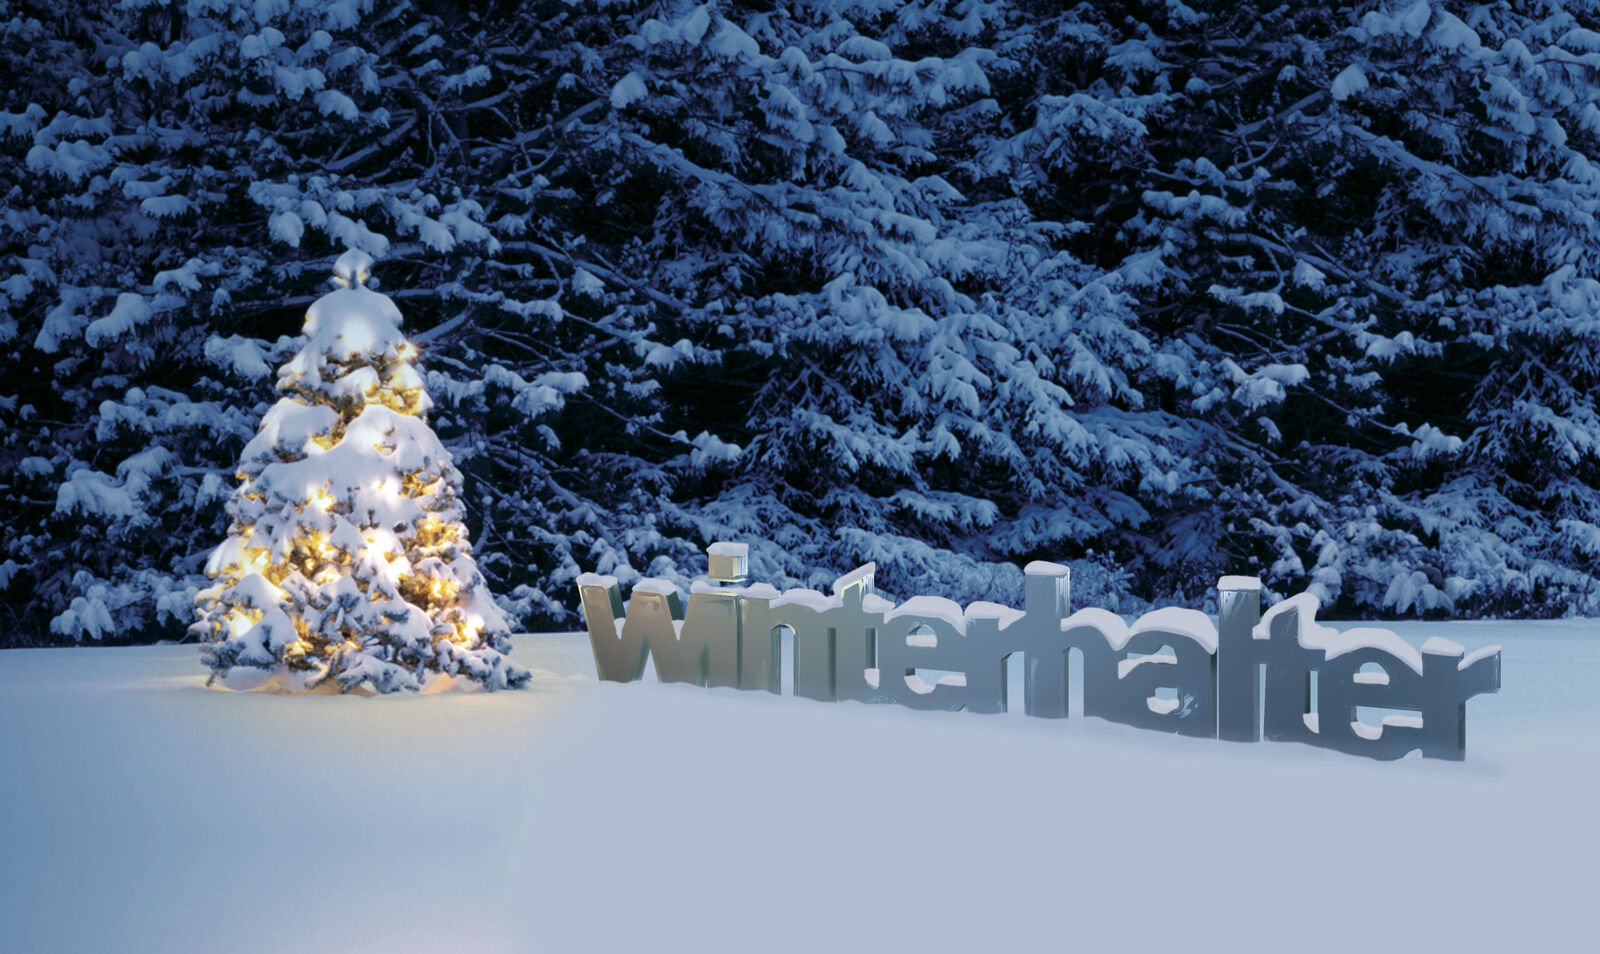 Winterhalter поздравляет Вас с Новым Годом и Рождеством!